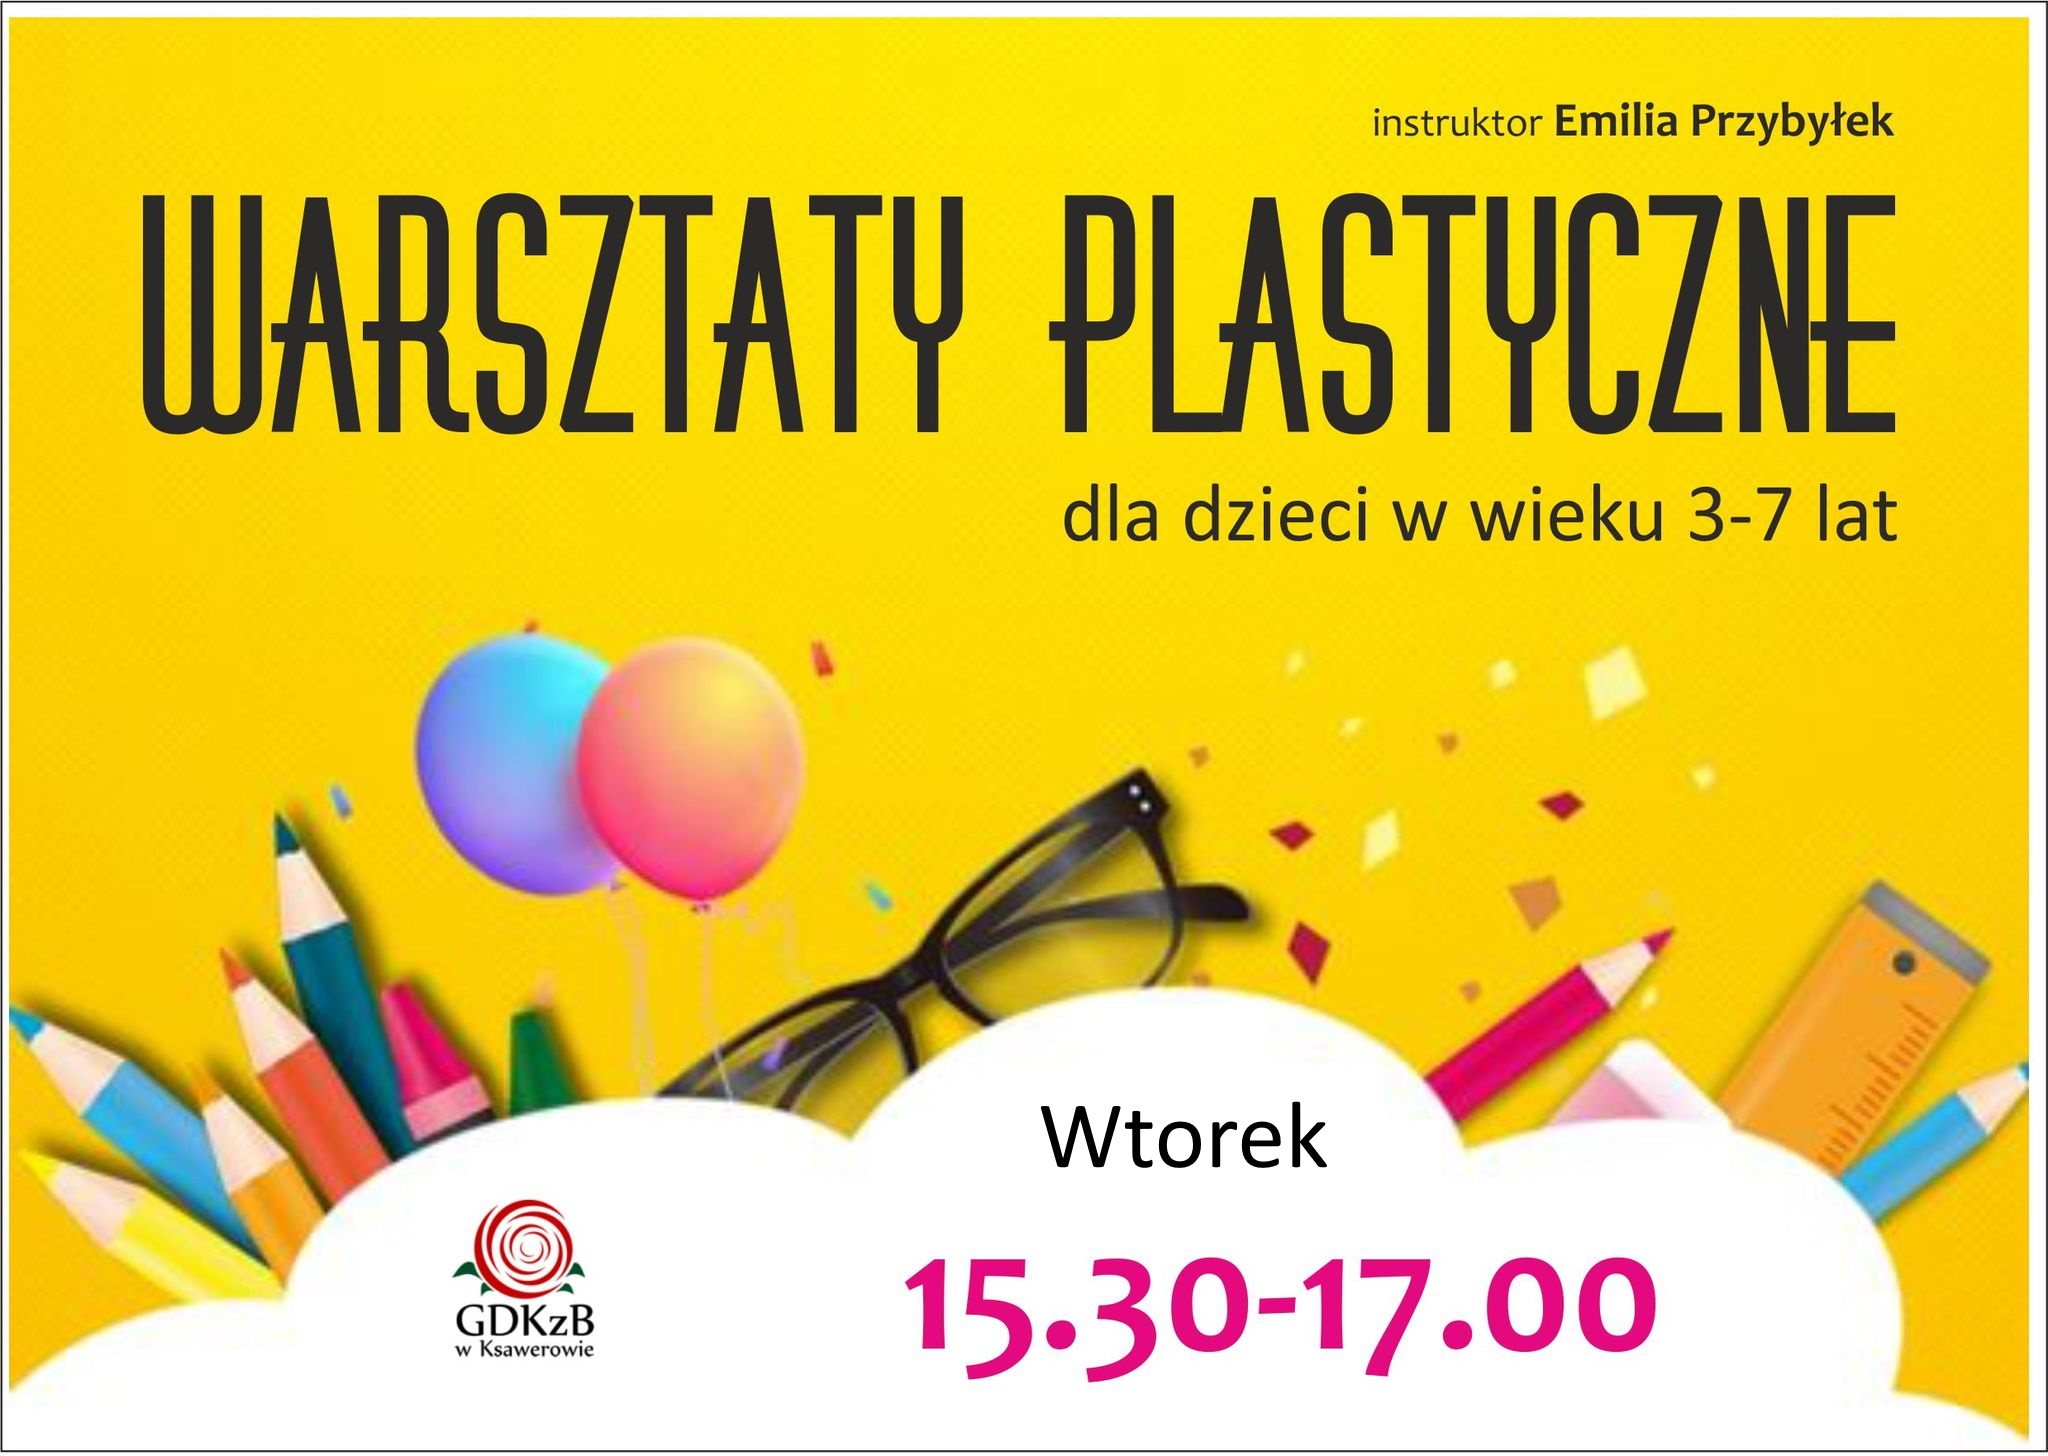 instruktor Emilia Przybyłek, warsztaty plastyczne dla dzieci w wieku 3 - 7 lat, wtorek 15:30 - 17:00